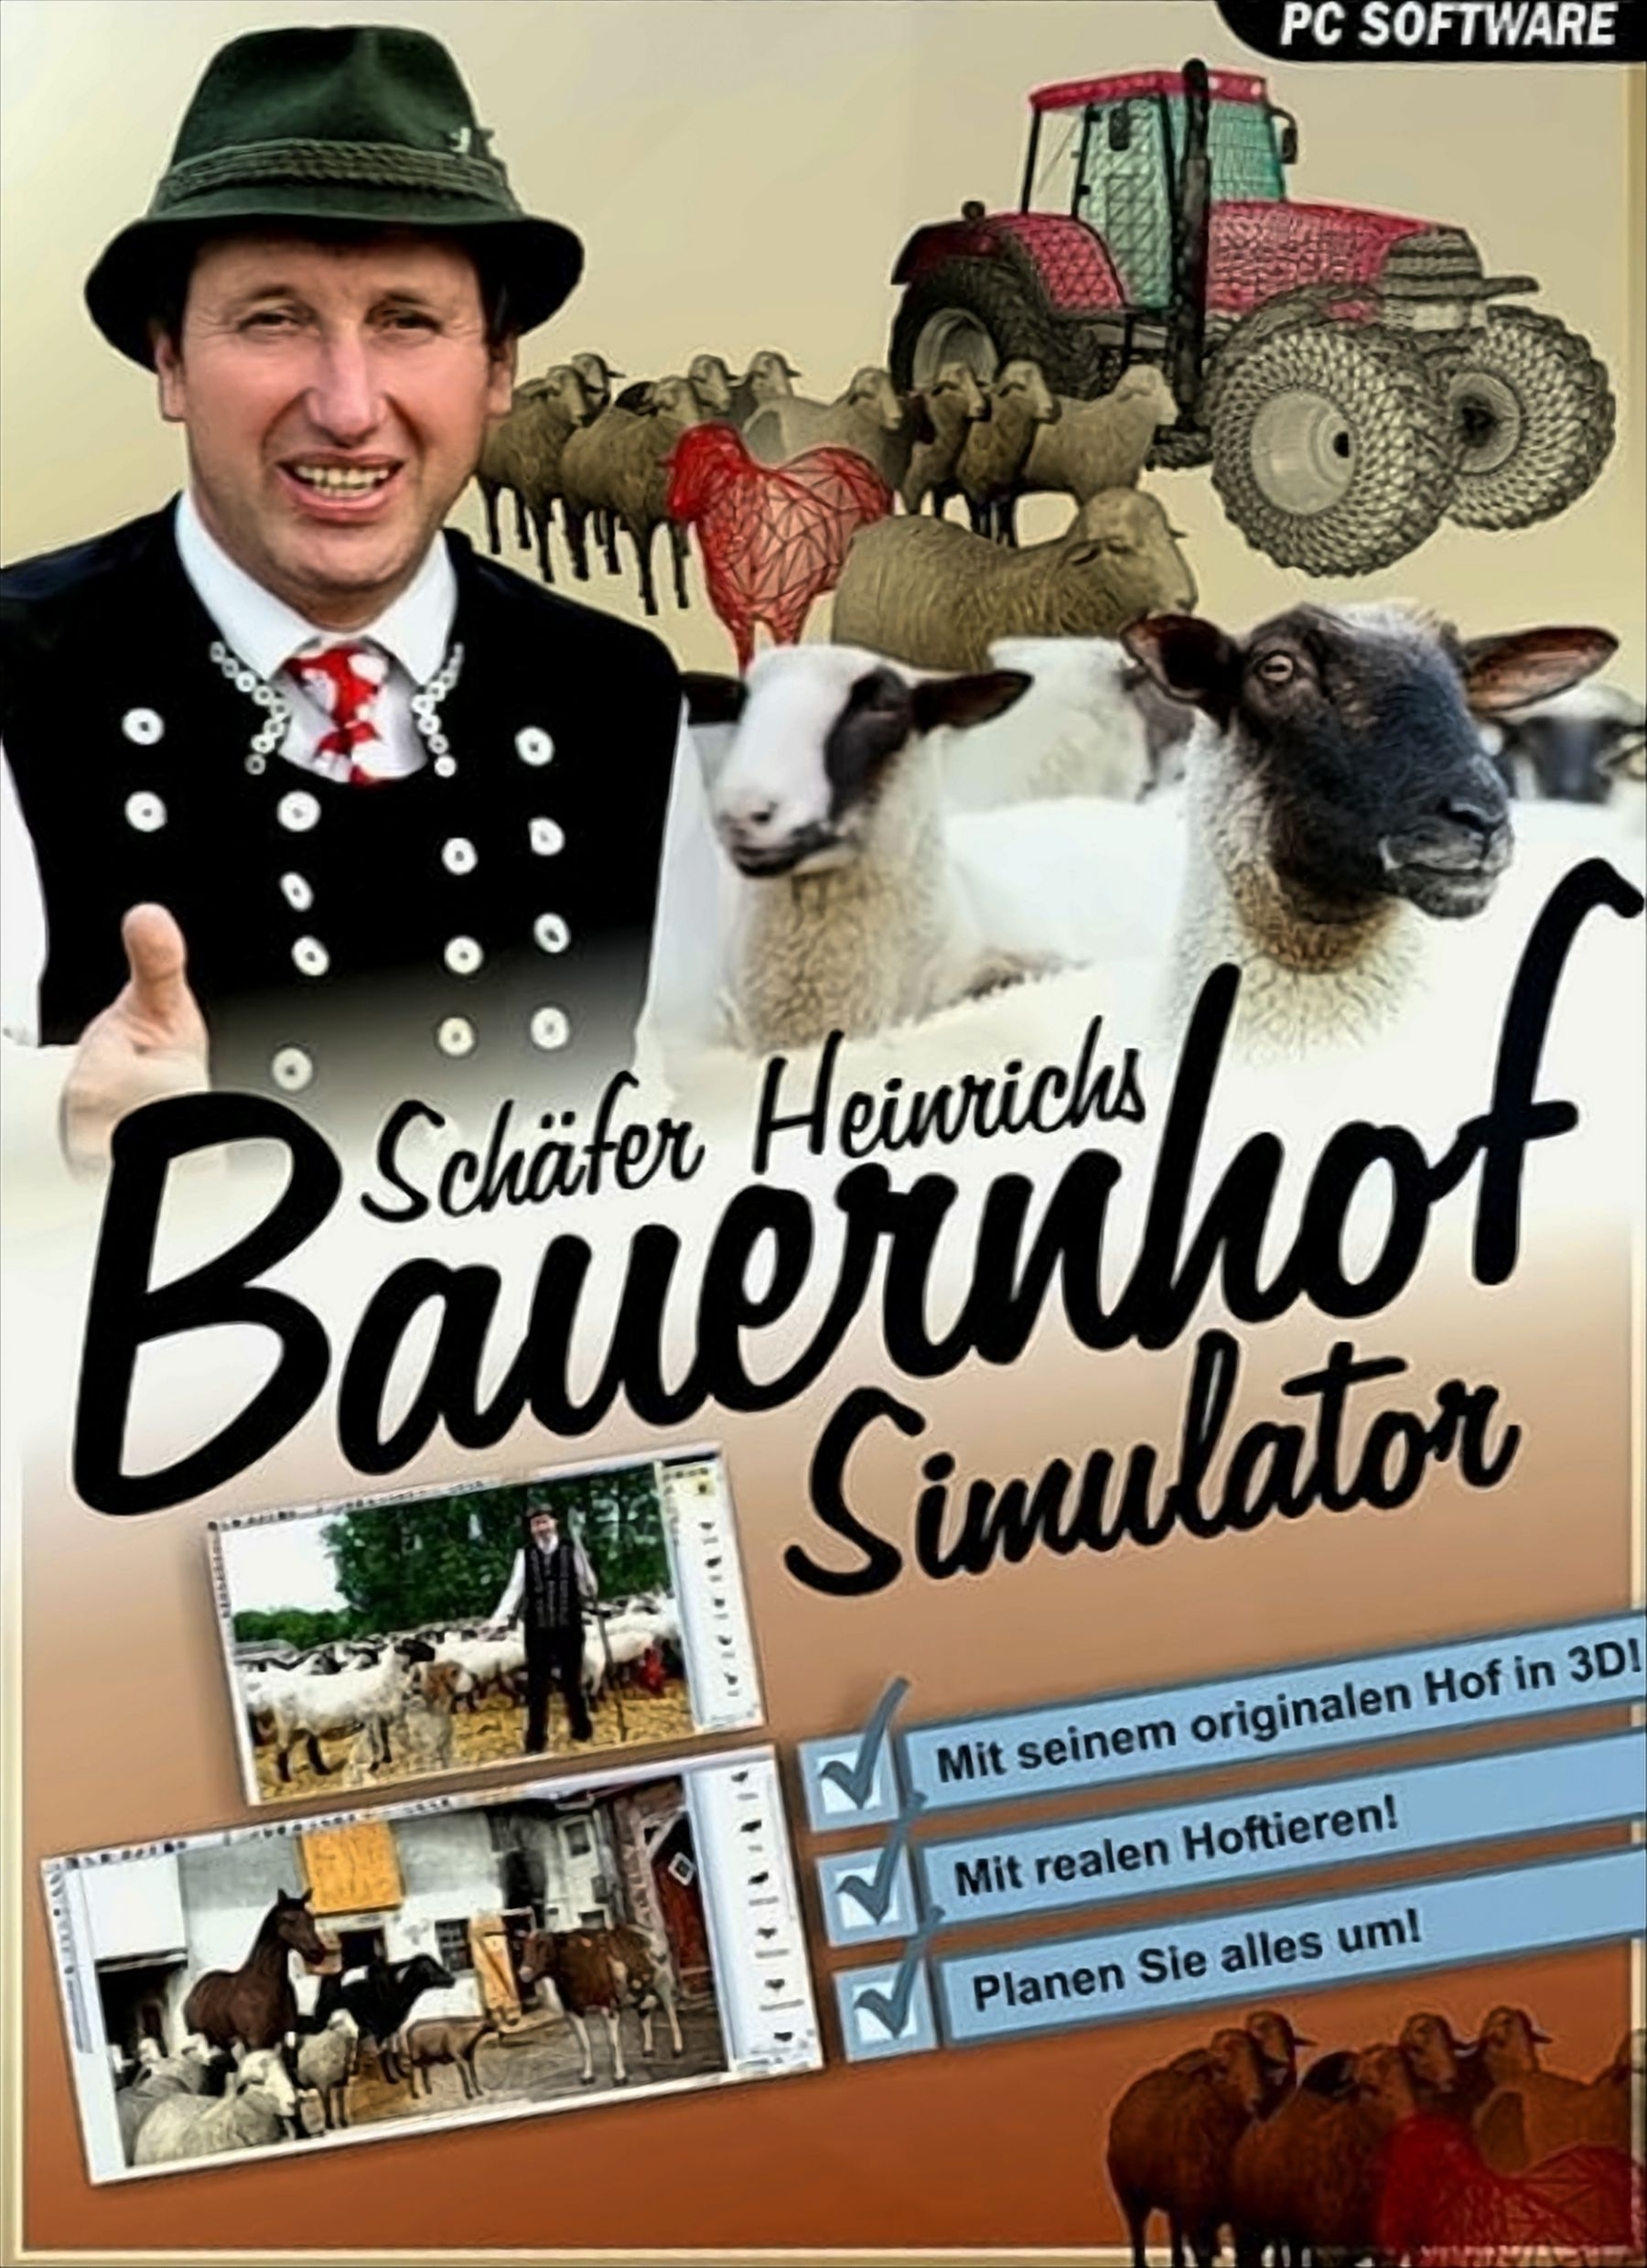 Heinrichs [PC] Bauernhof - Schäfer Simulator